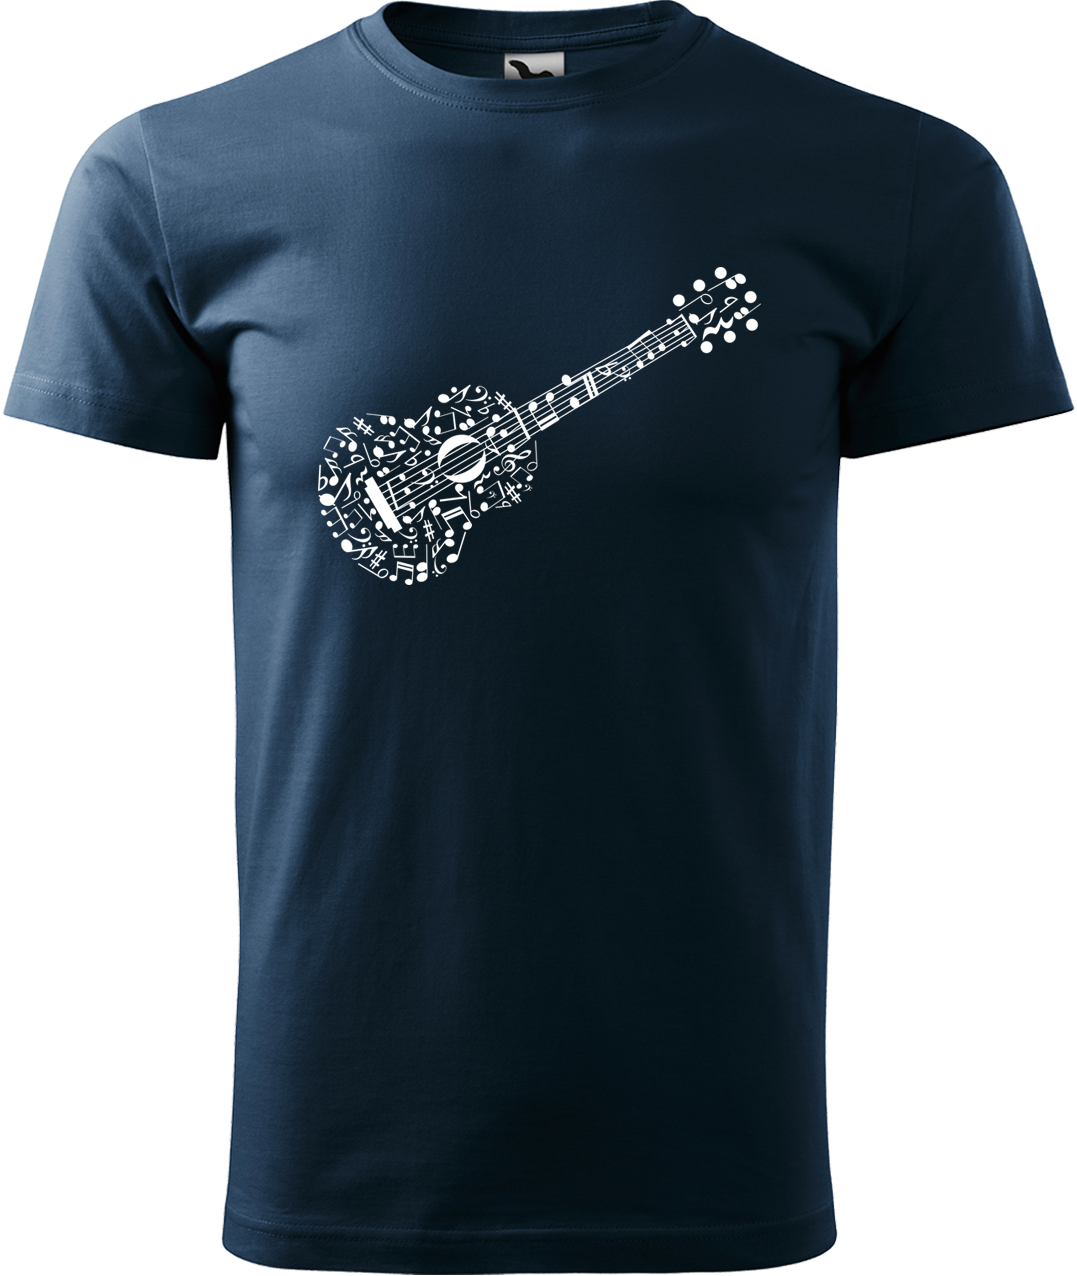 Pánské tričko s kytarou - Kytara z not Velikost: 4XL, Barva: Námořní modrá (02), Střih: pánský